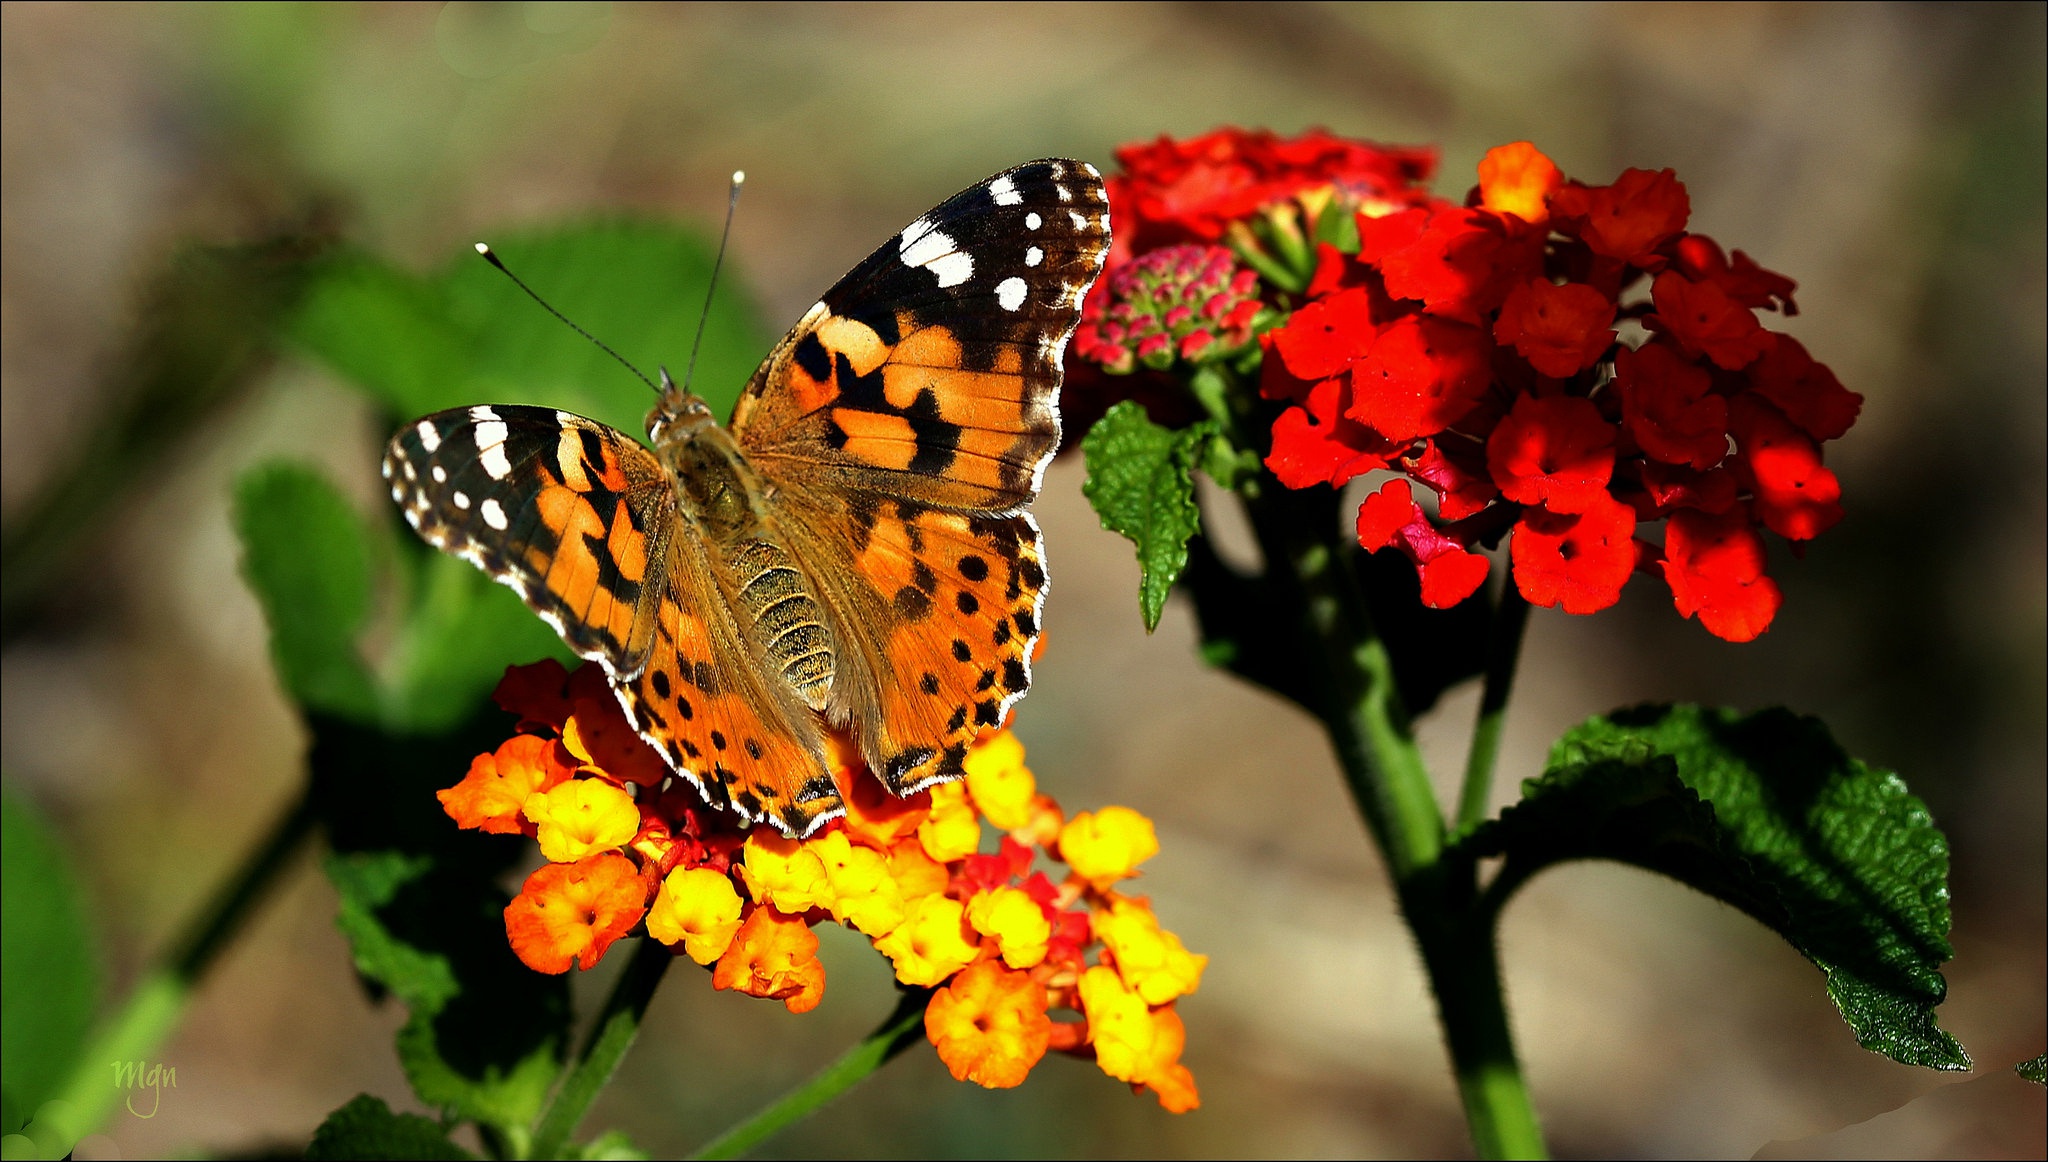 Descarga gratuita de fondo de pantalla para móvil de Animales, Insecto, Mariposa, Flor Roja, Macrofotografía.